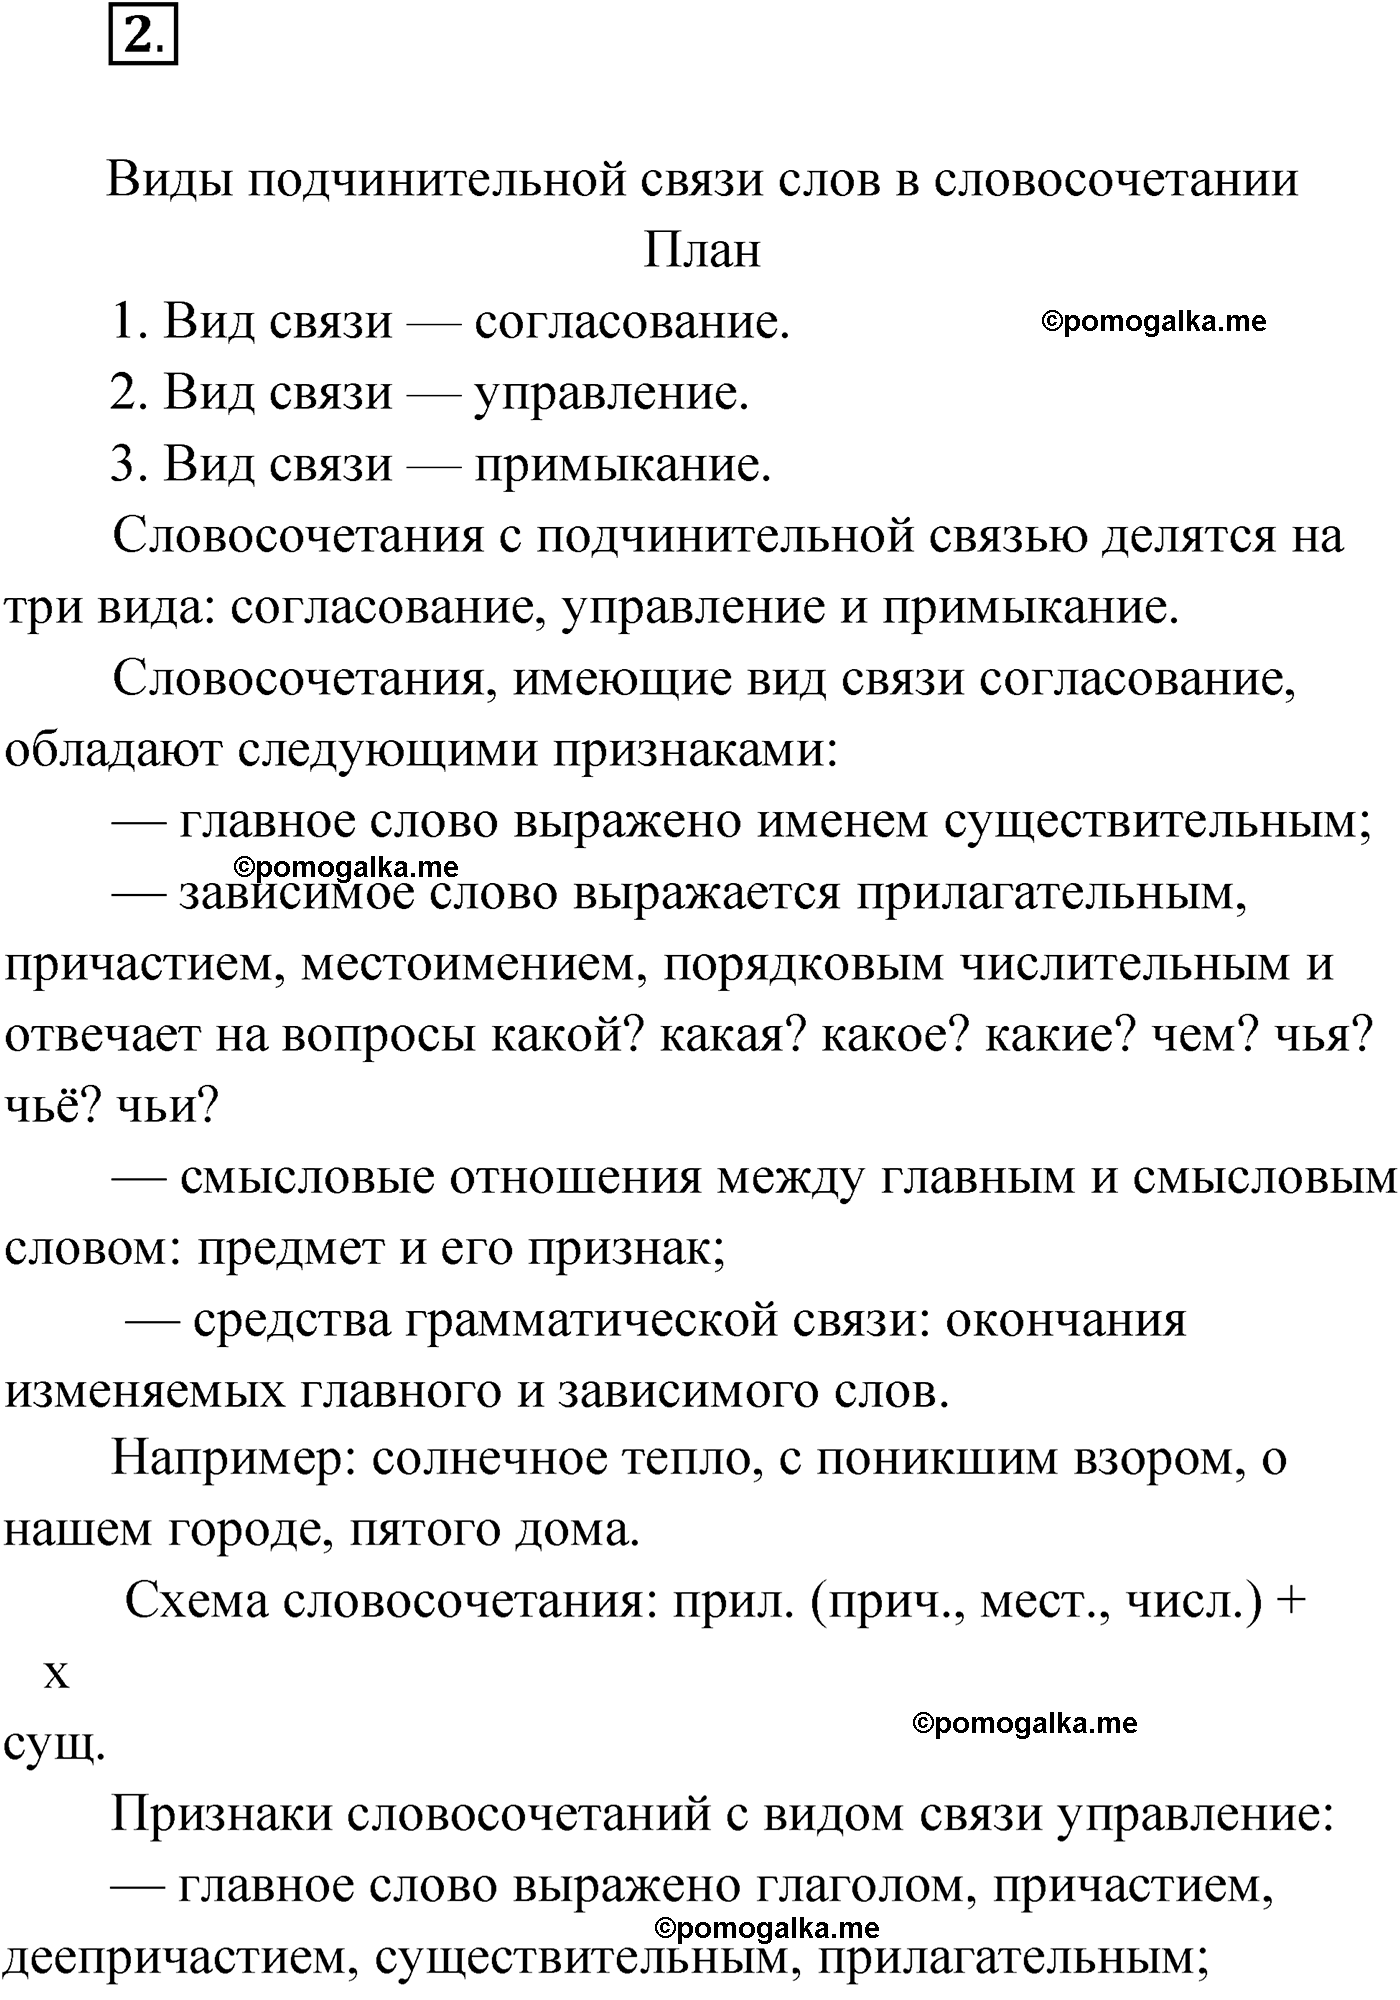 упражнение №2 русский язык 9 класс Мурина 2019 год